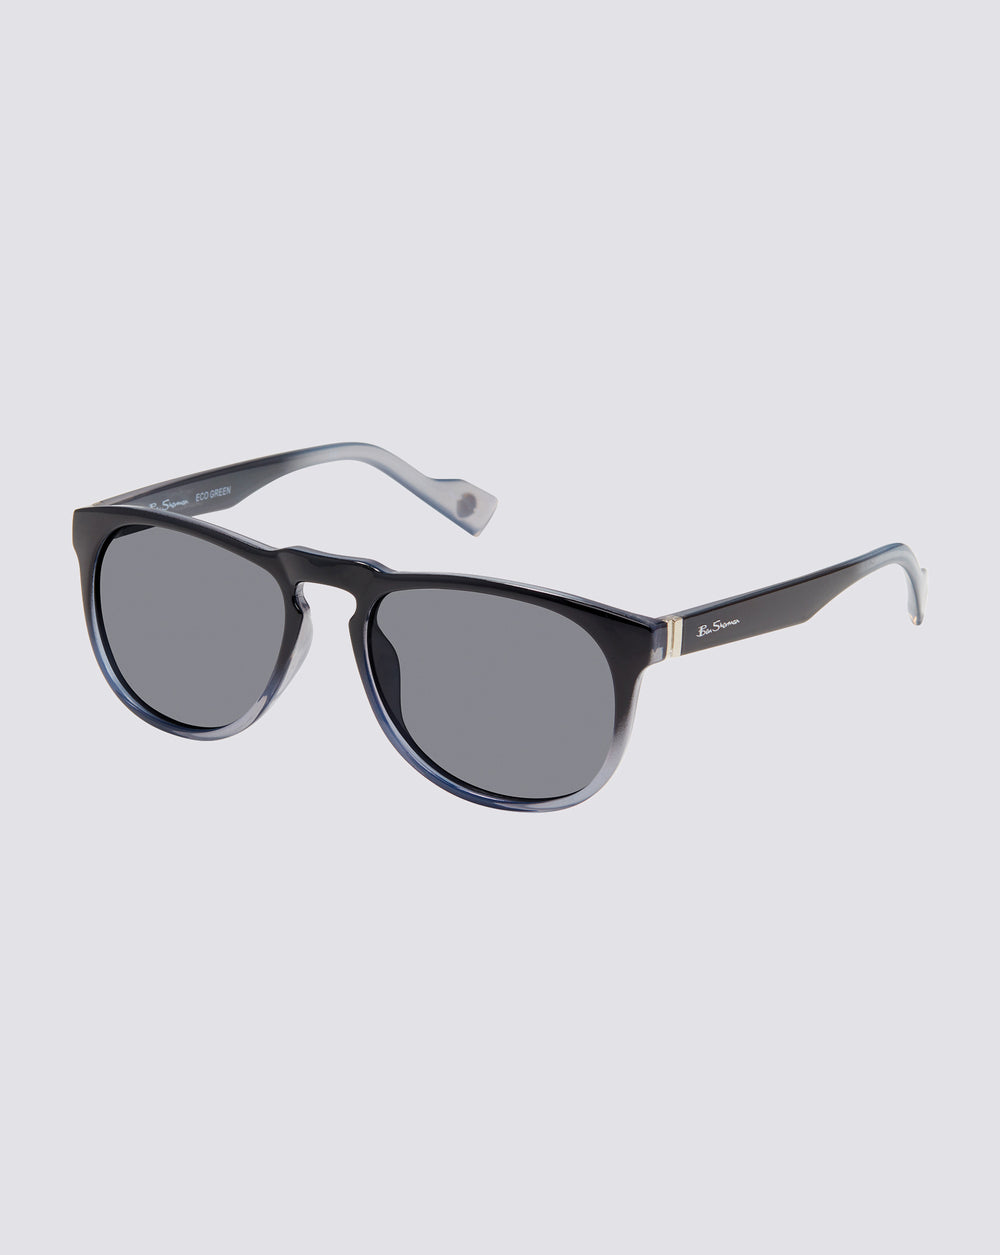 Charles Polarized Eco-Green Sunglasses - Navy Fade